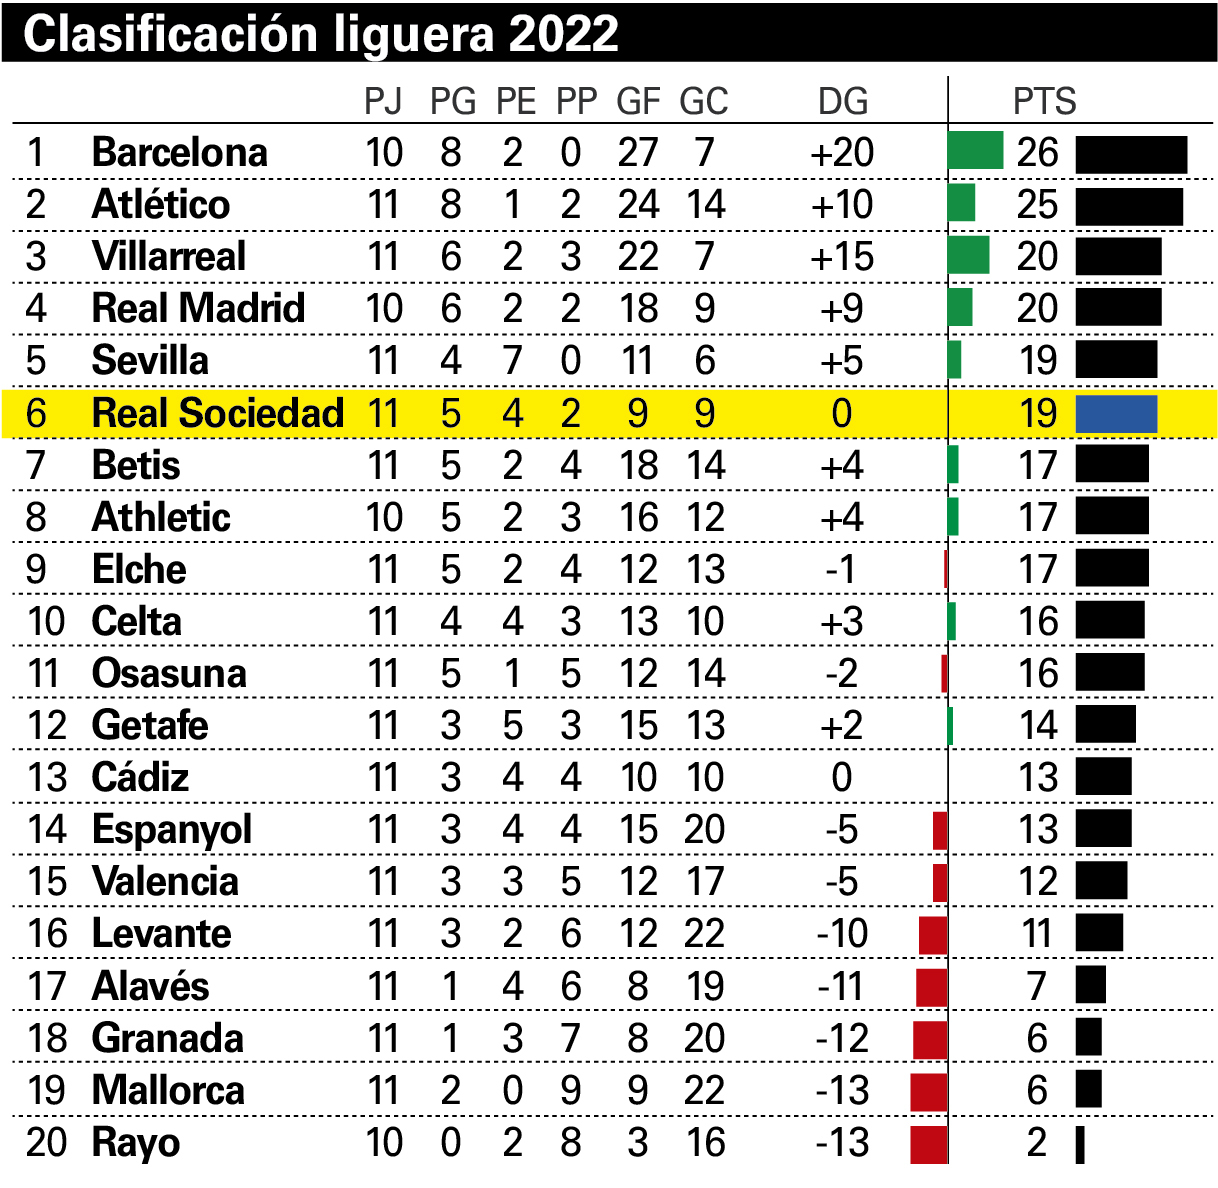 Аргентина лига футбол турнирная. Испания ла лига 2021 2022 турнирная таблица. Ла лига таблица 2022-2023 турнирная. Ла лига таблица 2022. Испания таблица по футболу 2023 премьер лига турнирная.